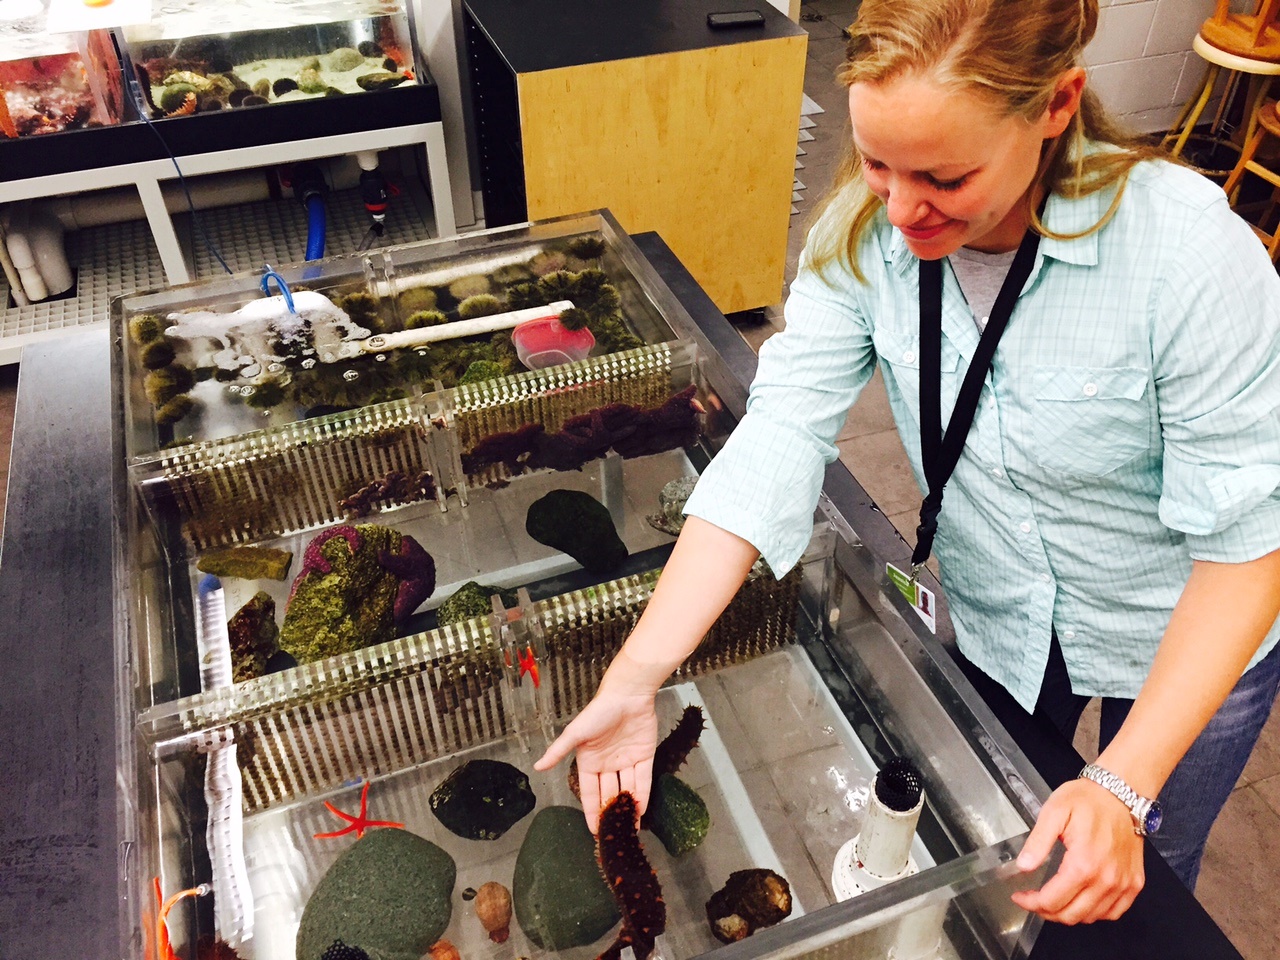 Sea cucumber research at Vancouver Aquarium